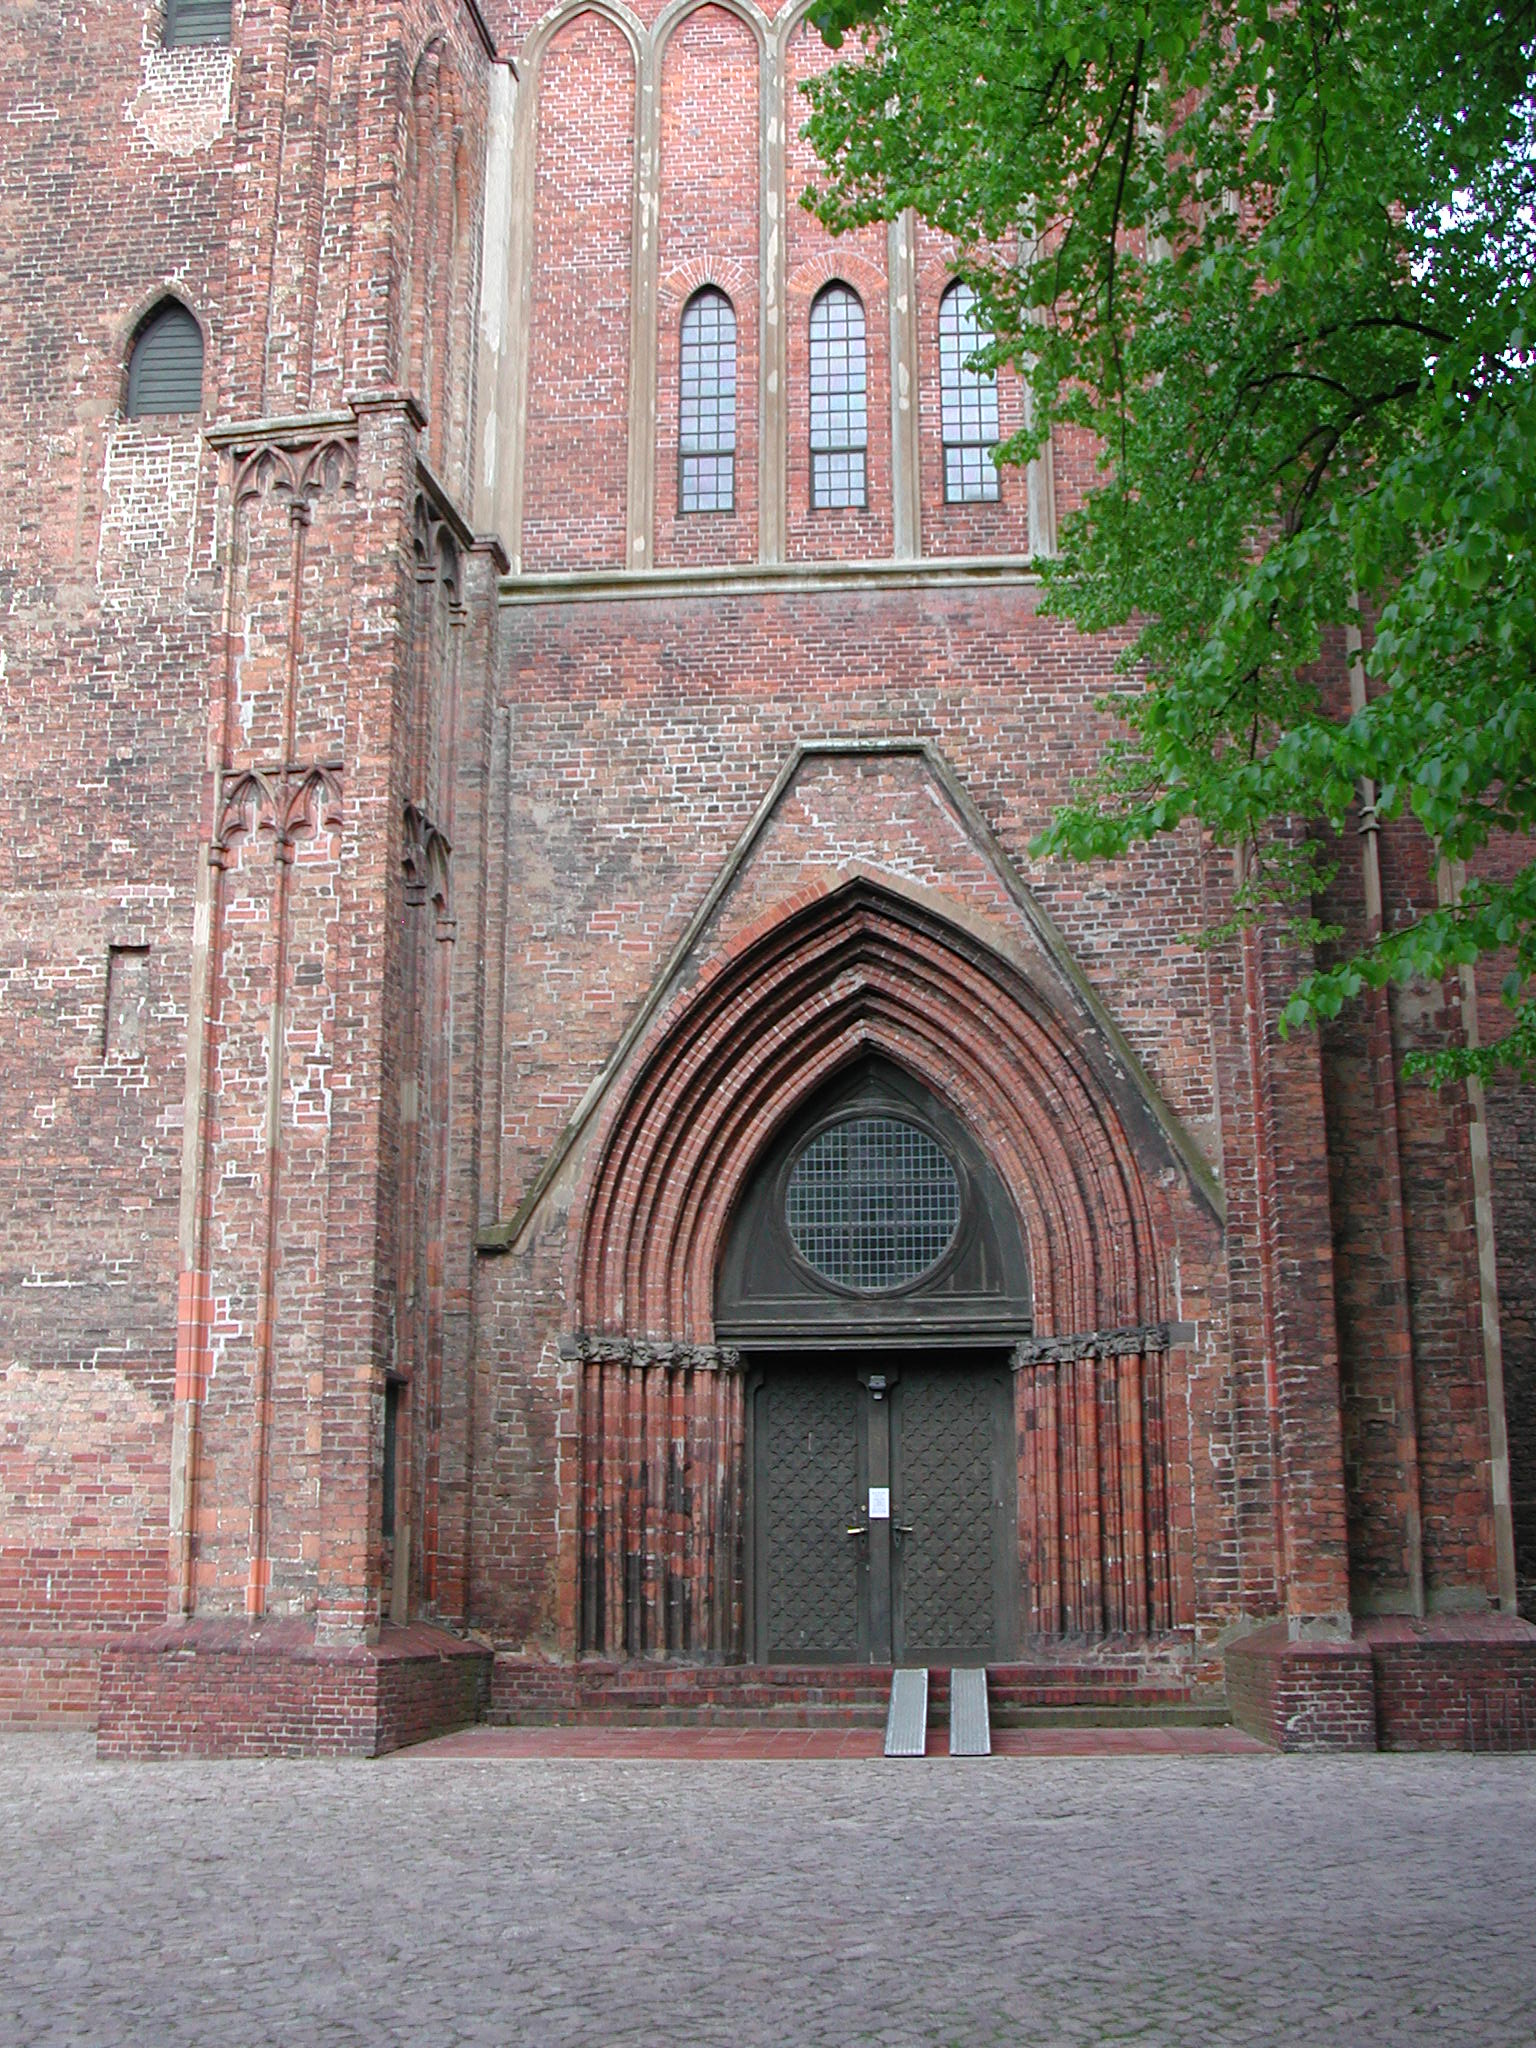 Domkirche St. Peter und Paul zu Brandenburg an der Havel